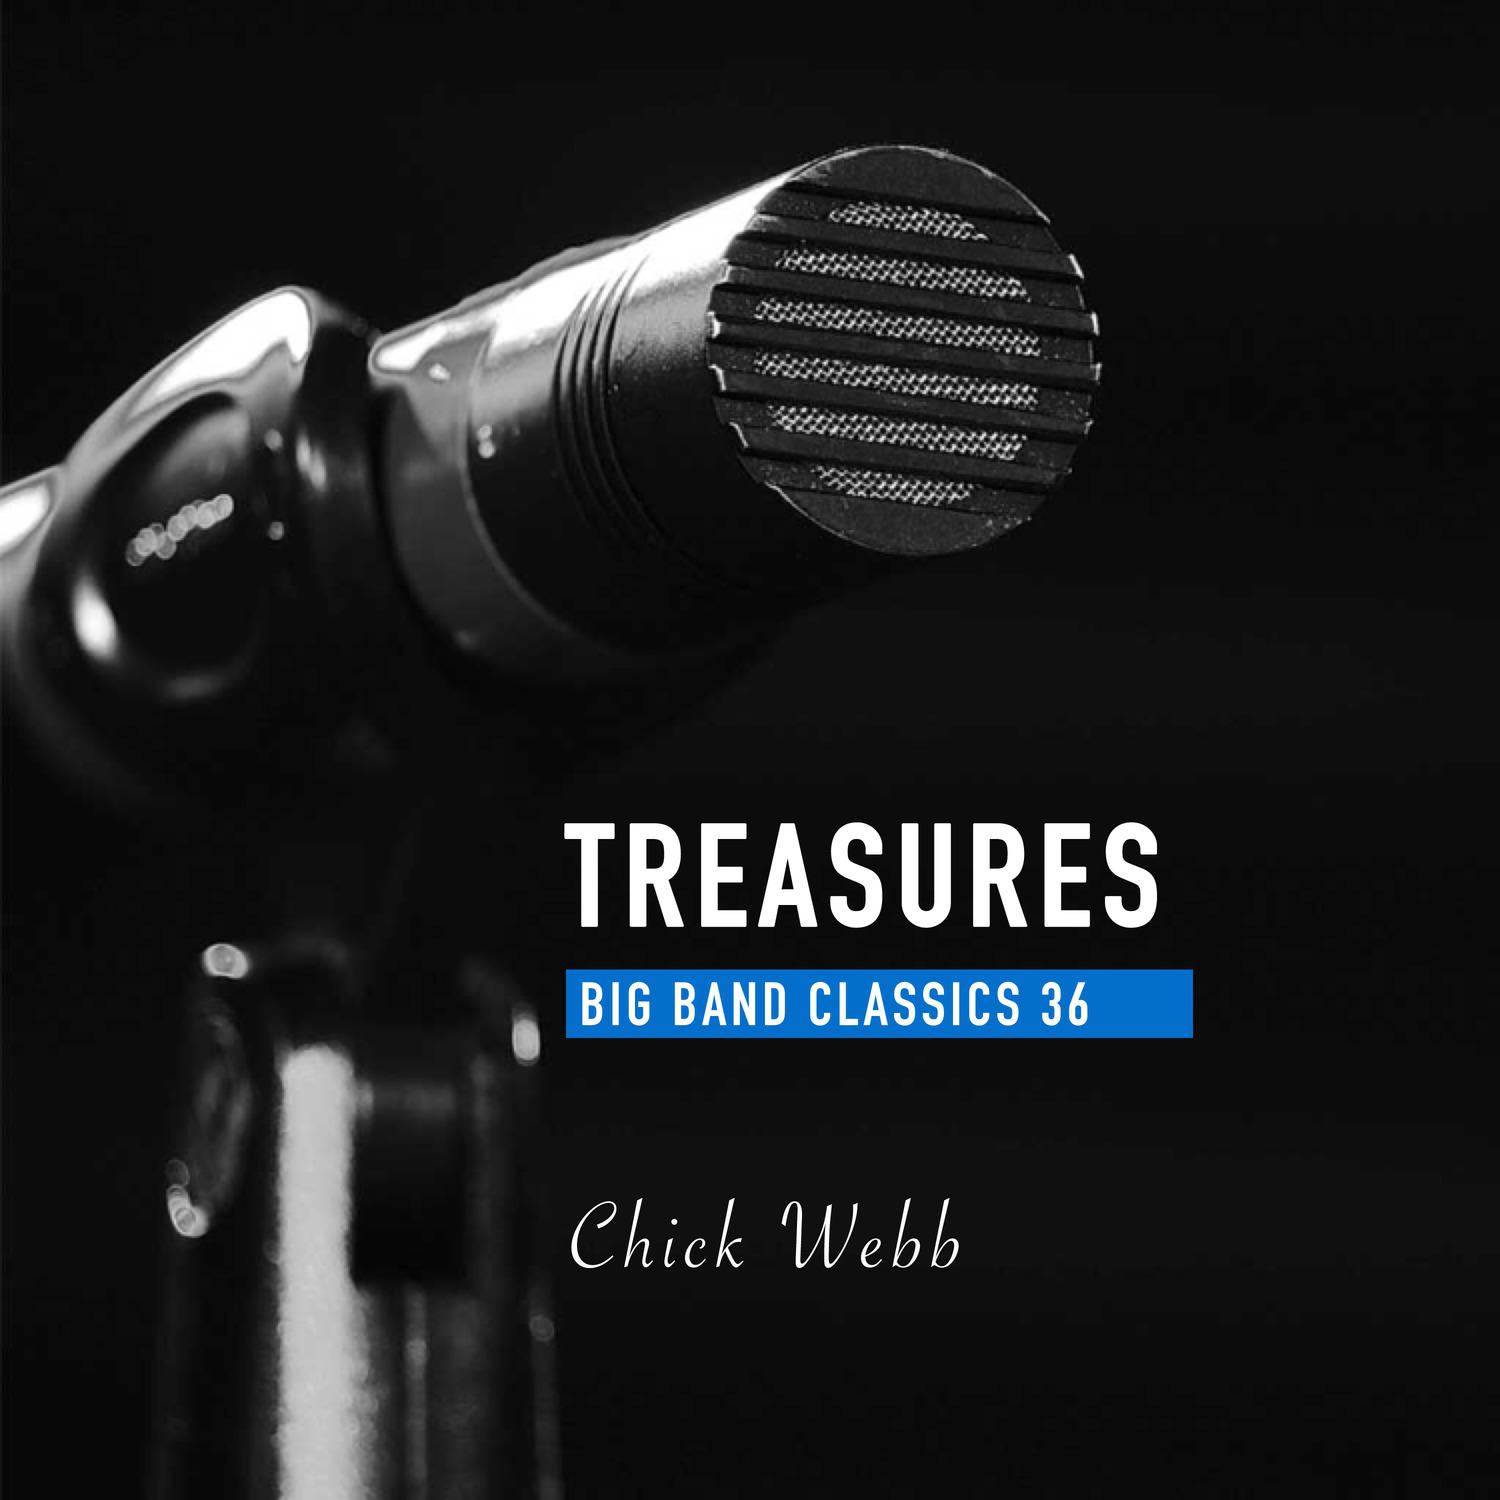 Treasures Big Band Classics, Vol. 36: Chick Webb